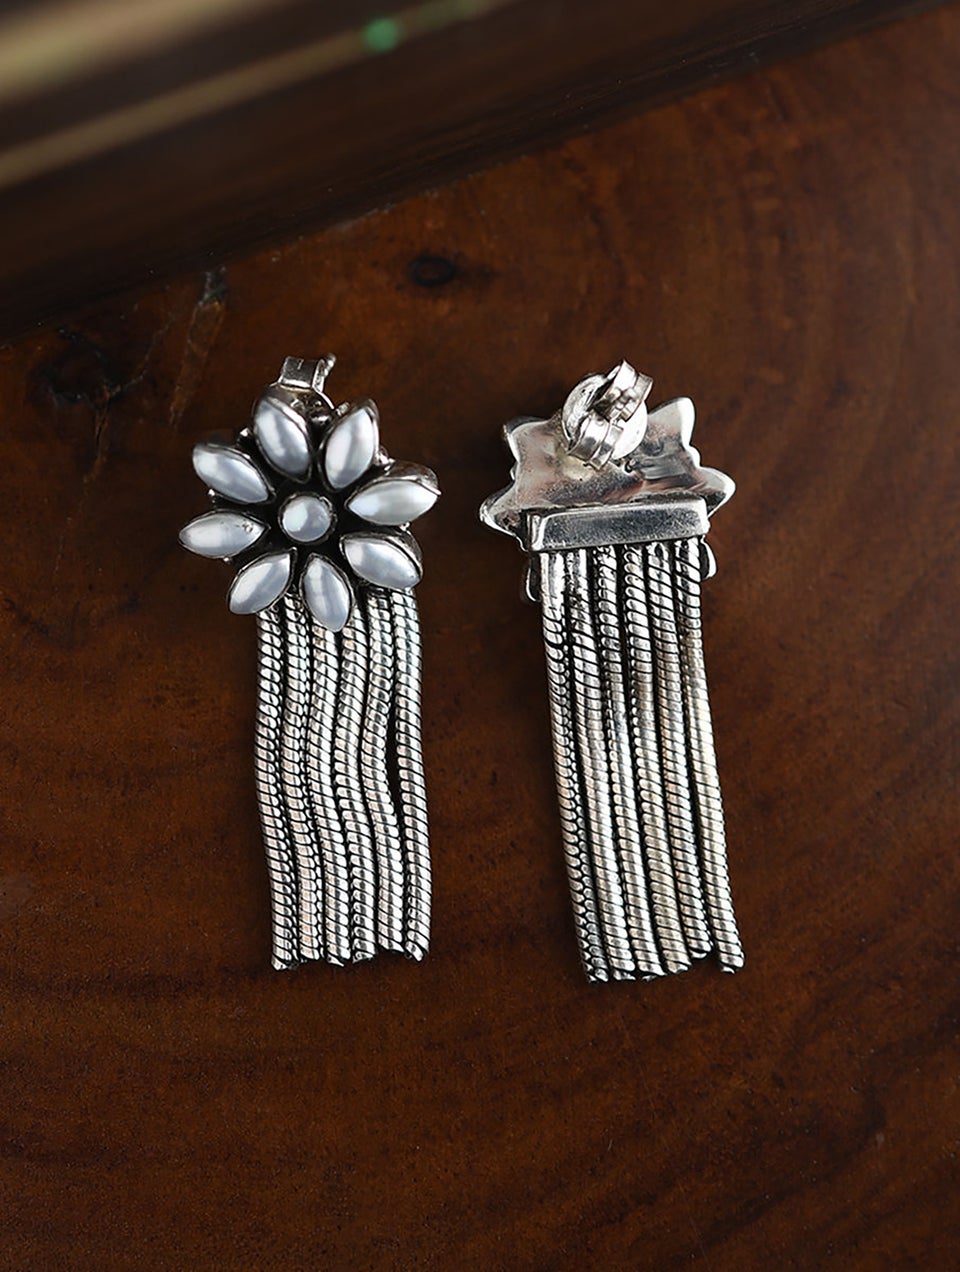 Women Tribal Silver Earrings with Pearls